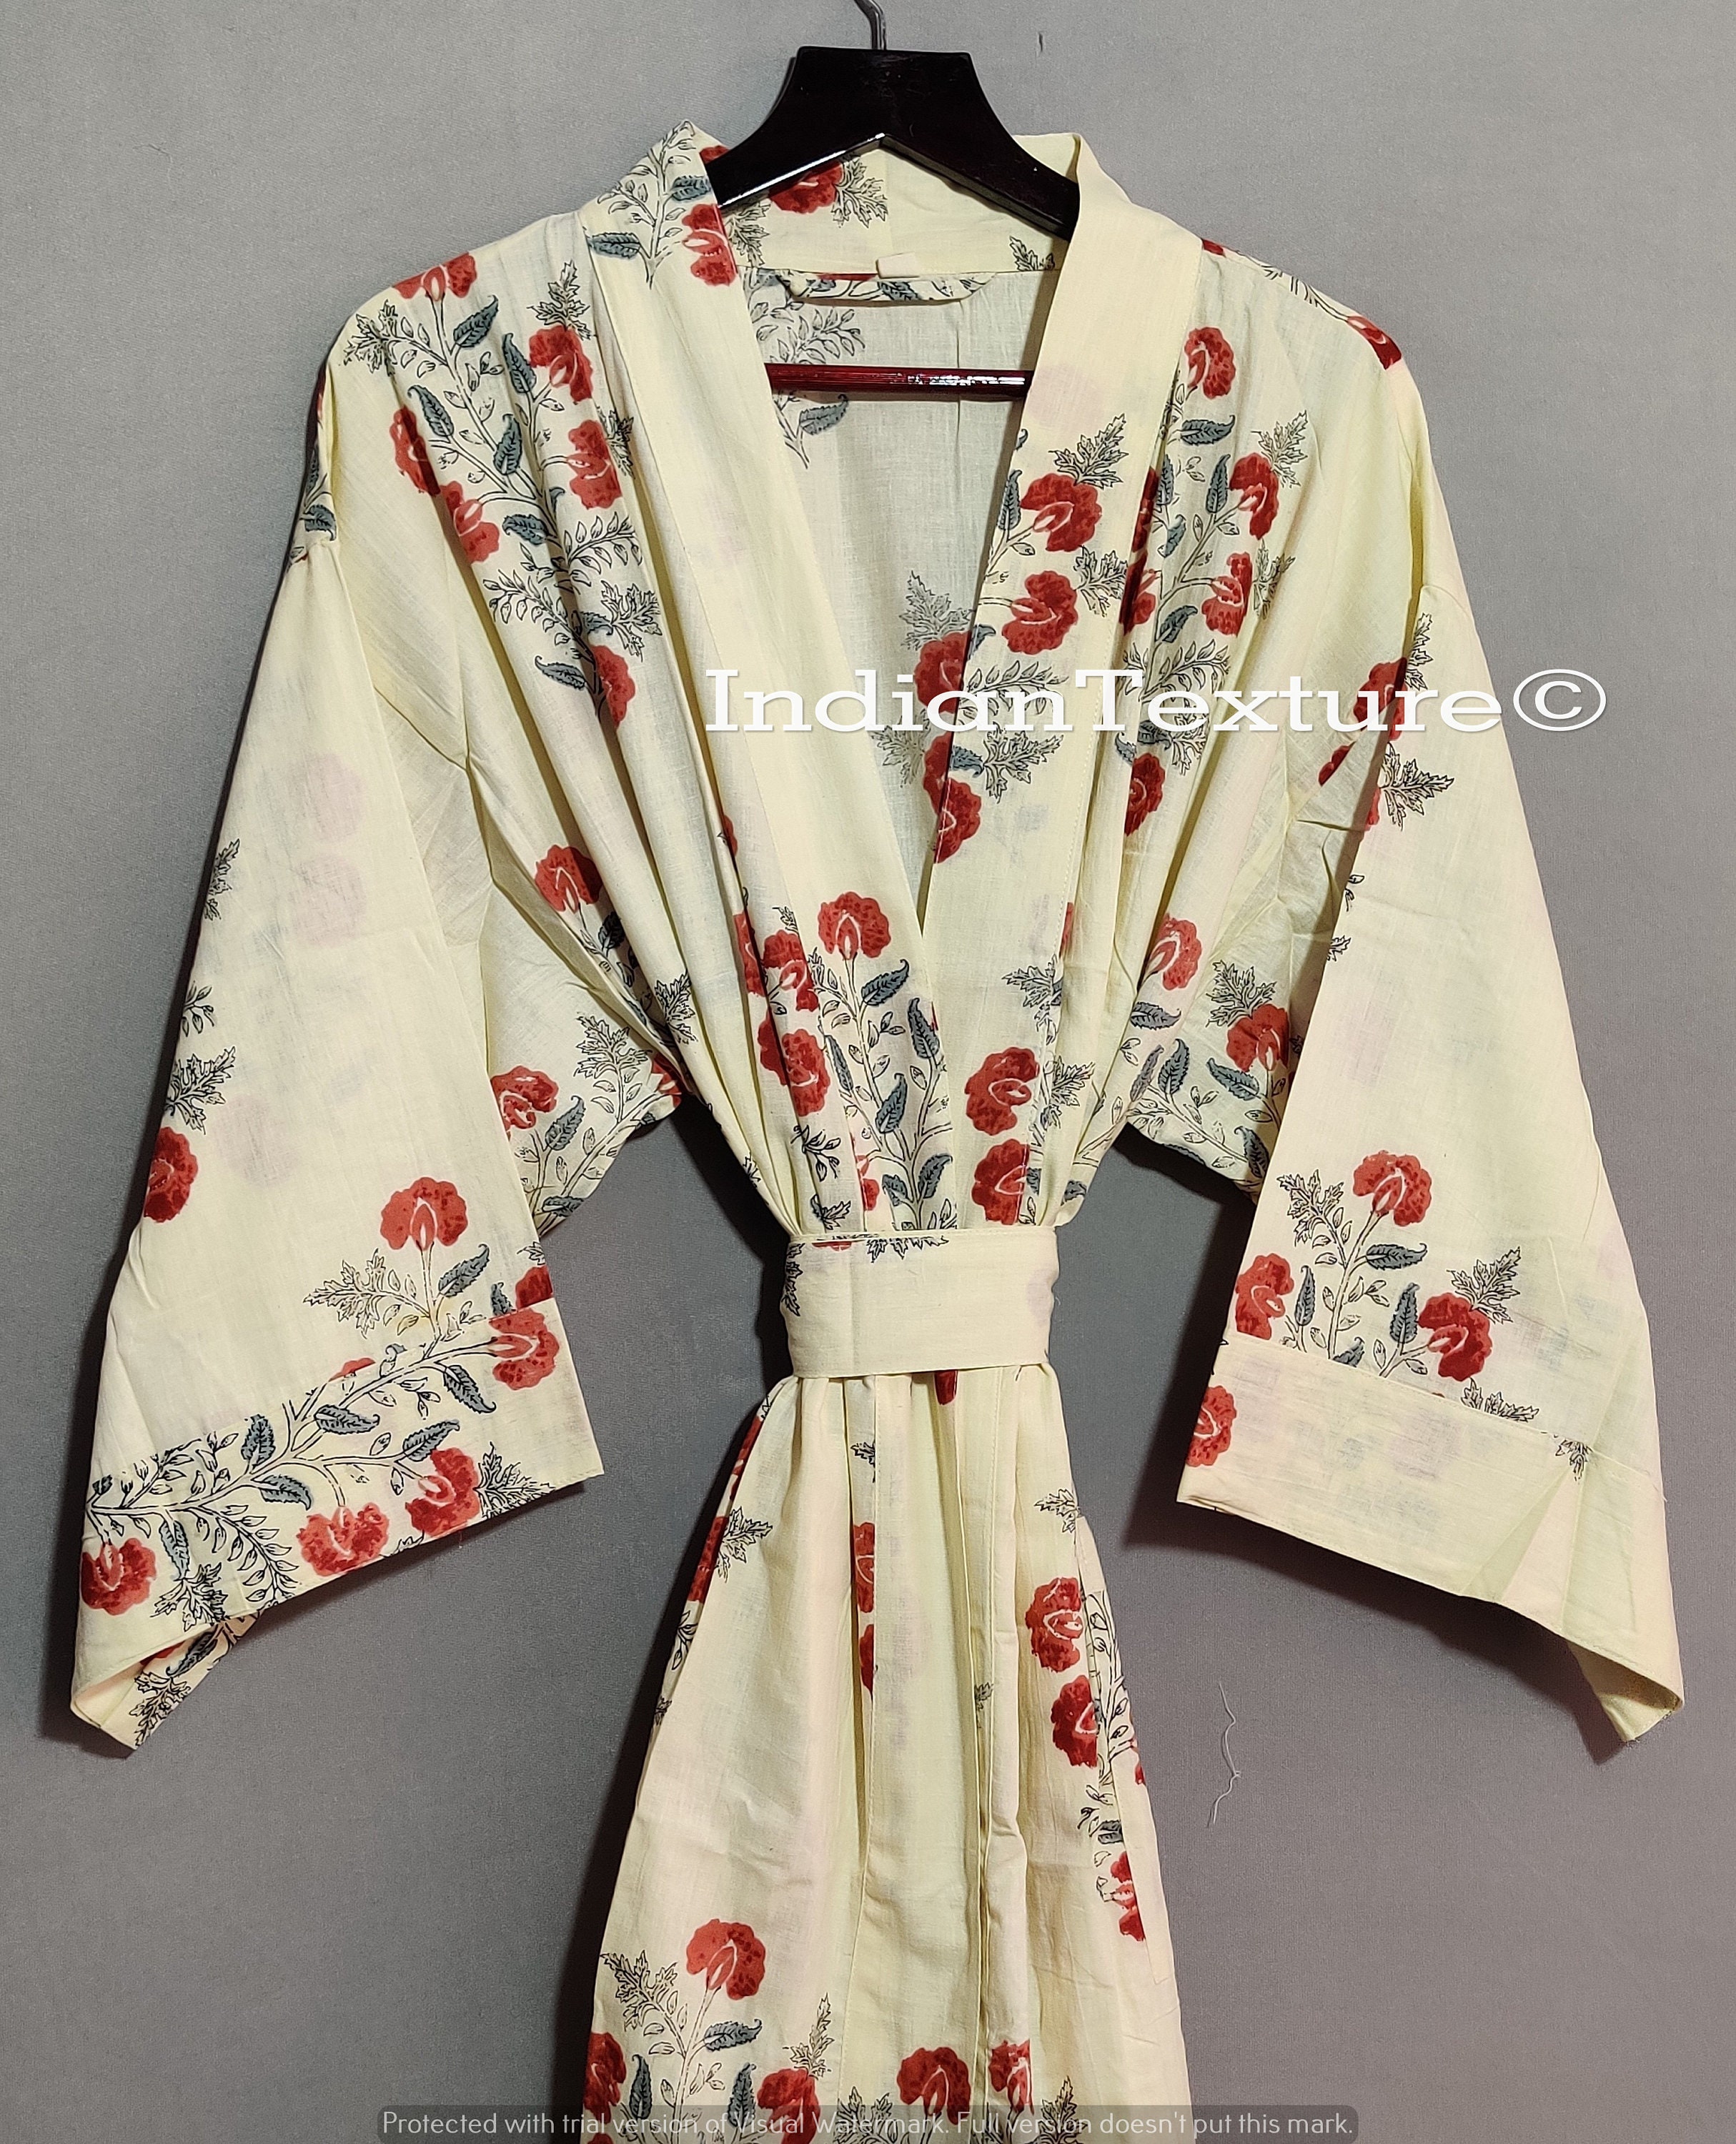 Cotton Kimono Indian Kimono Robes Printed Dressing Gown - Etsy